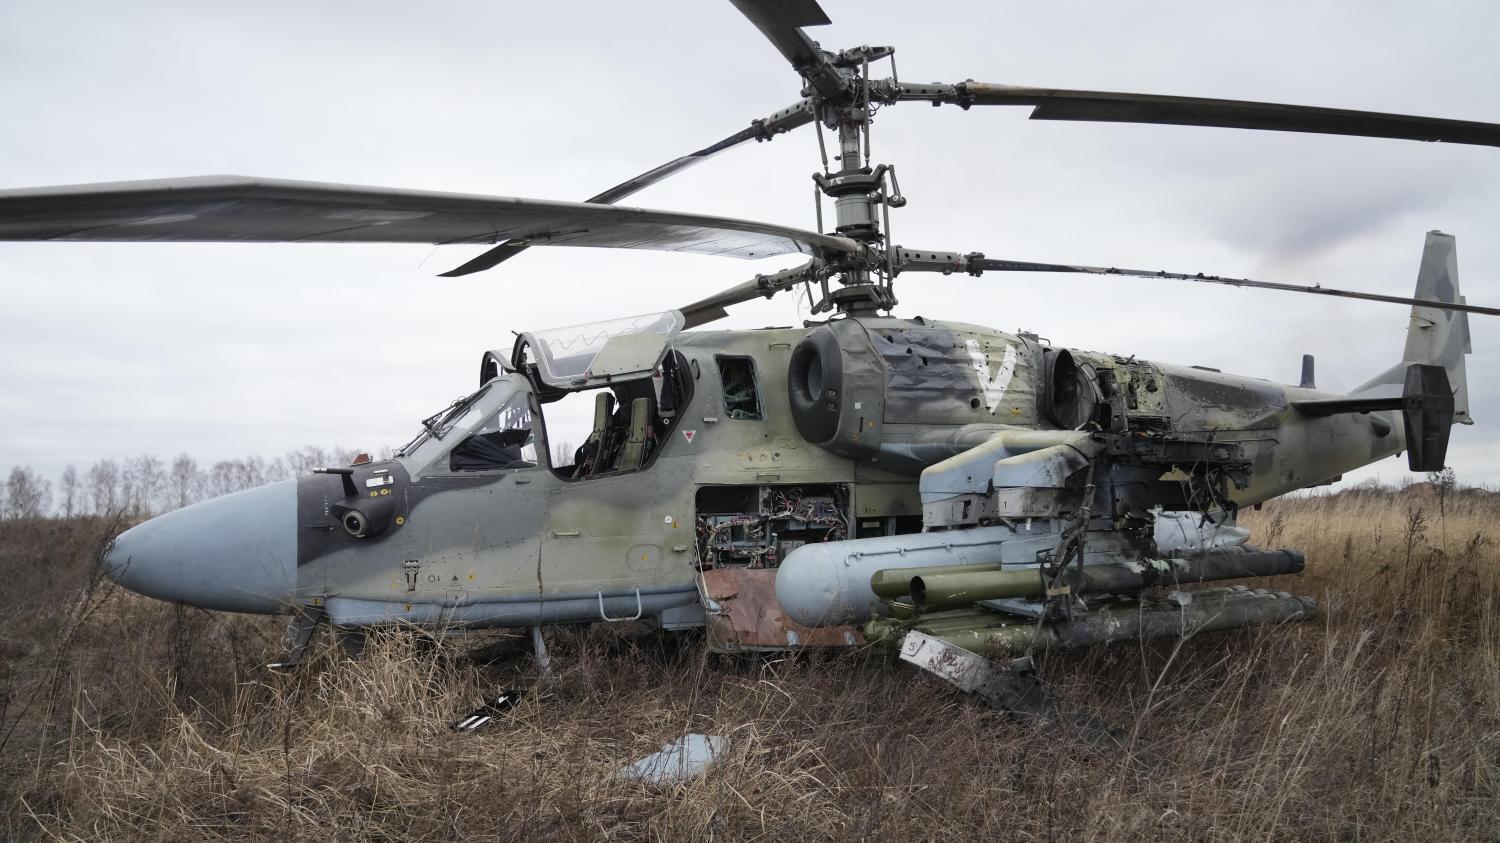 Российский Ка-52 "Аллигатор" можно поразить из стрелкового оружия